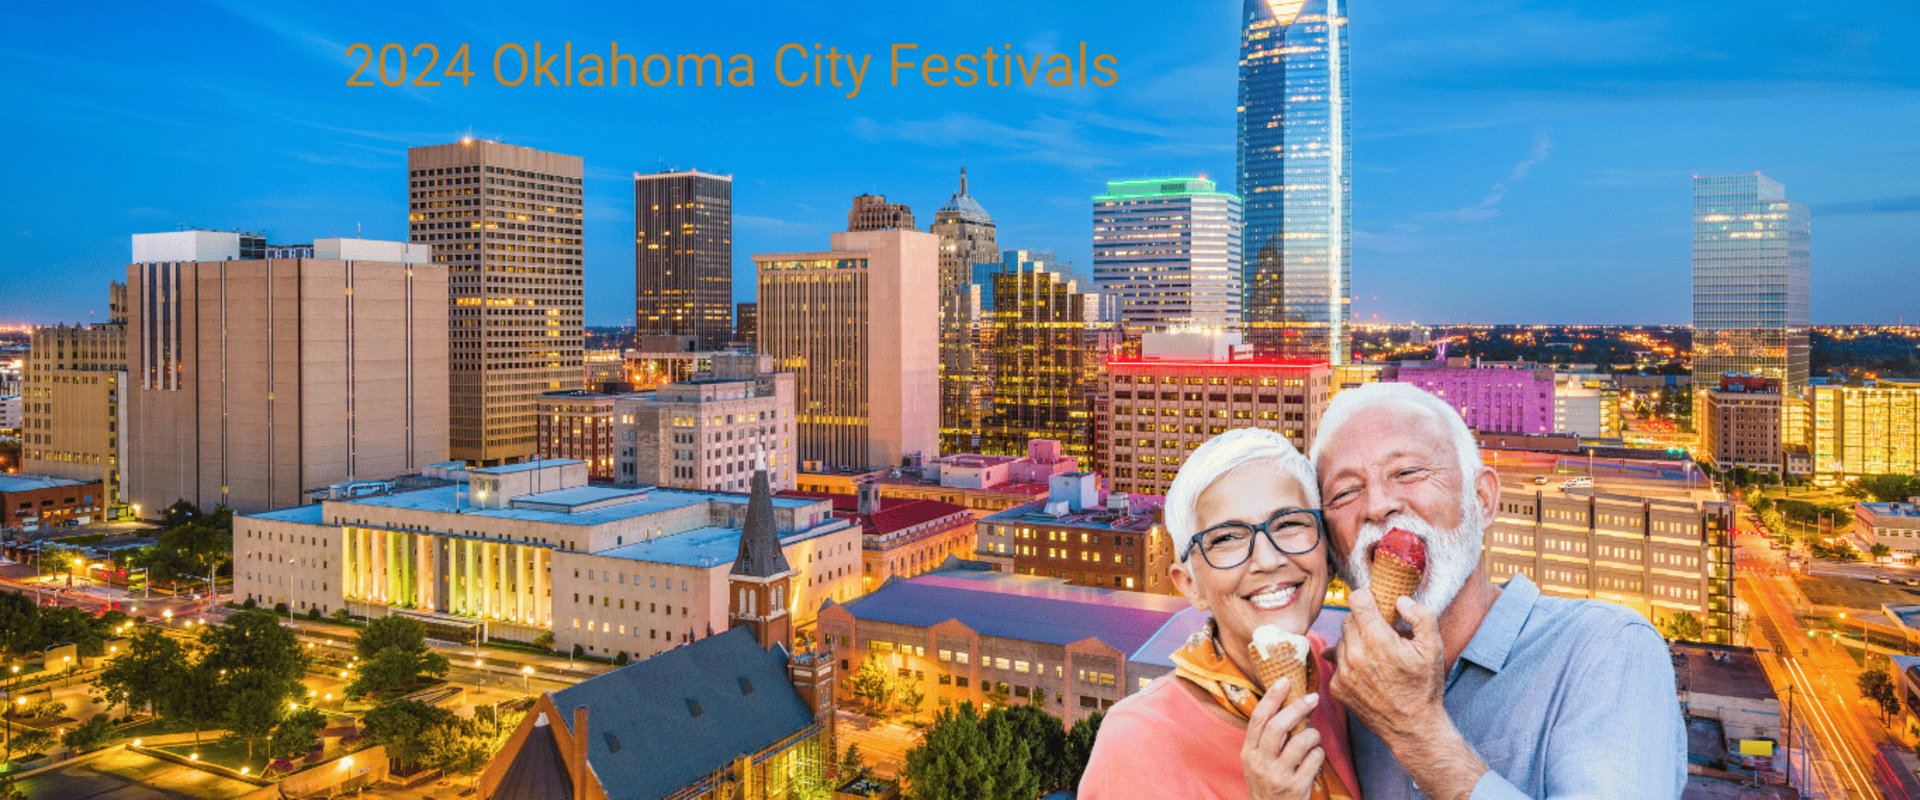 Summer 2024 Oklahoma City Festivals